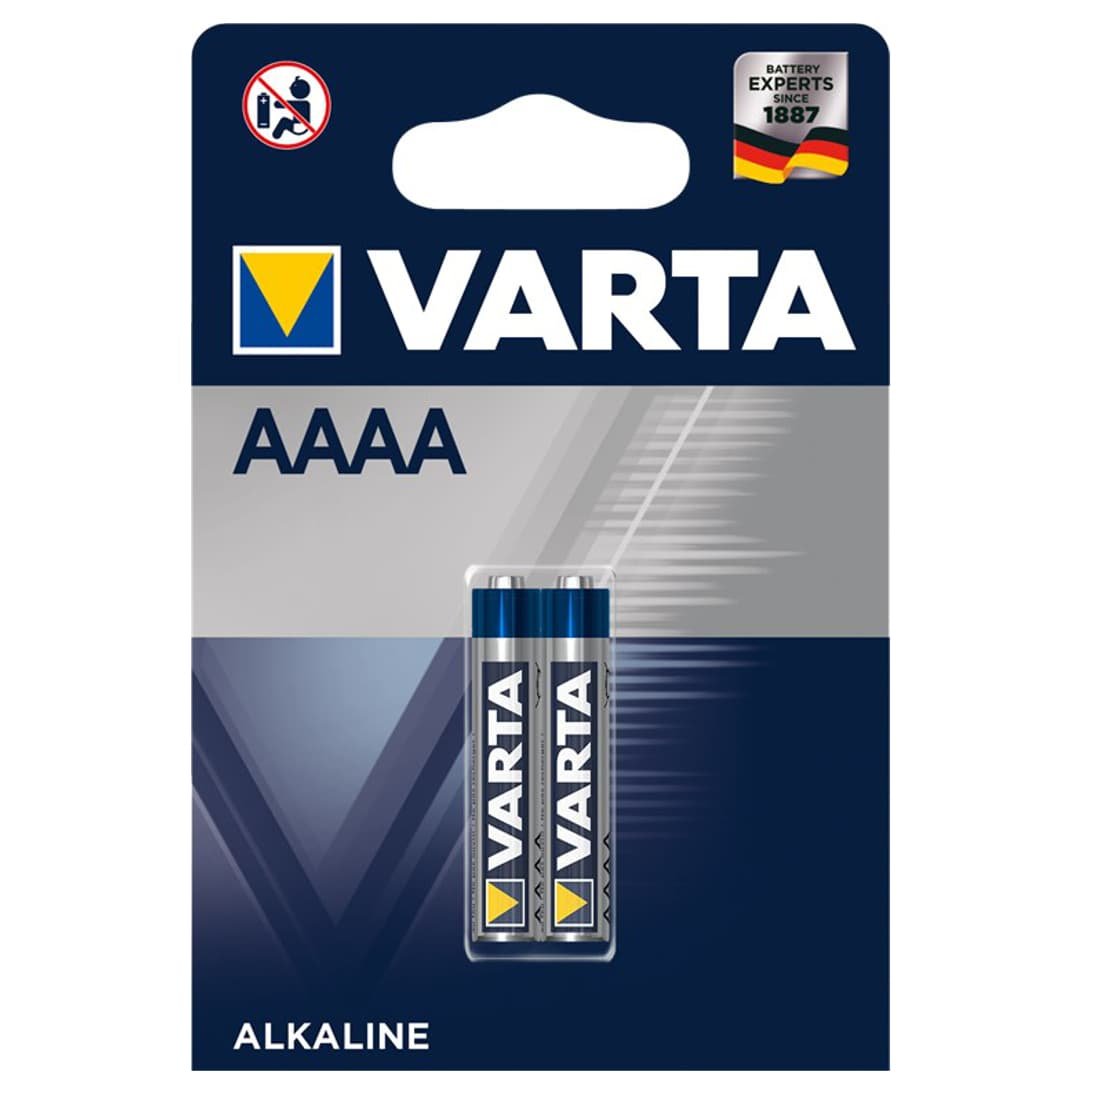 Billede af AAAA Batterier - Varta - 2 stk (71738)